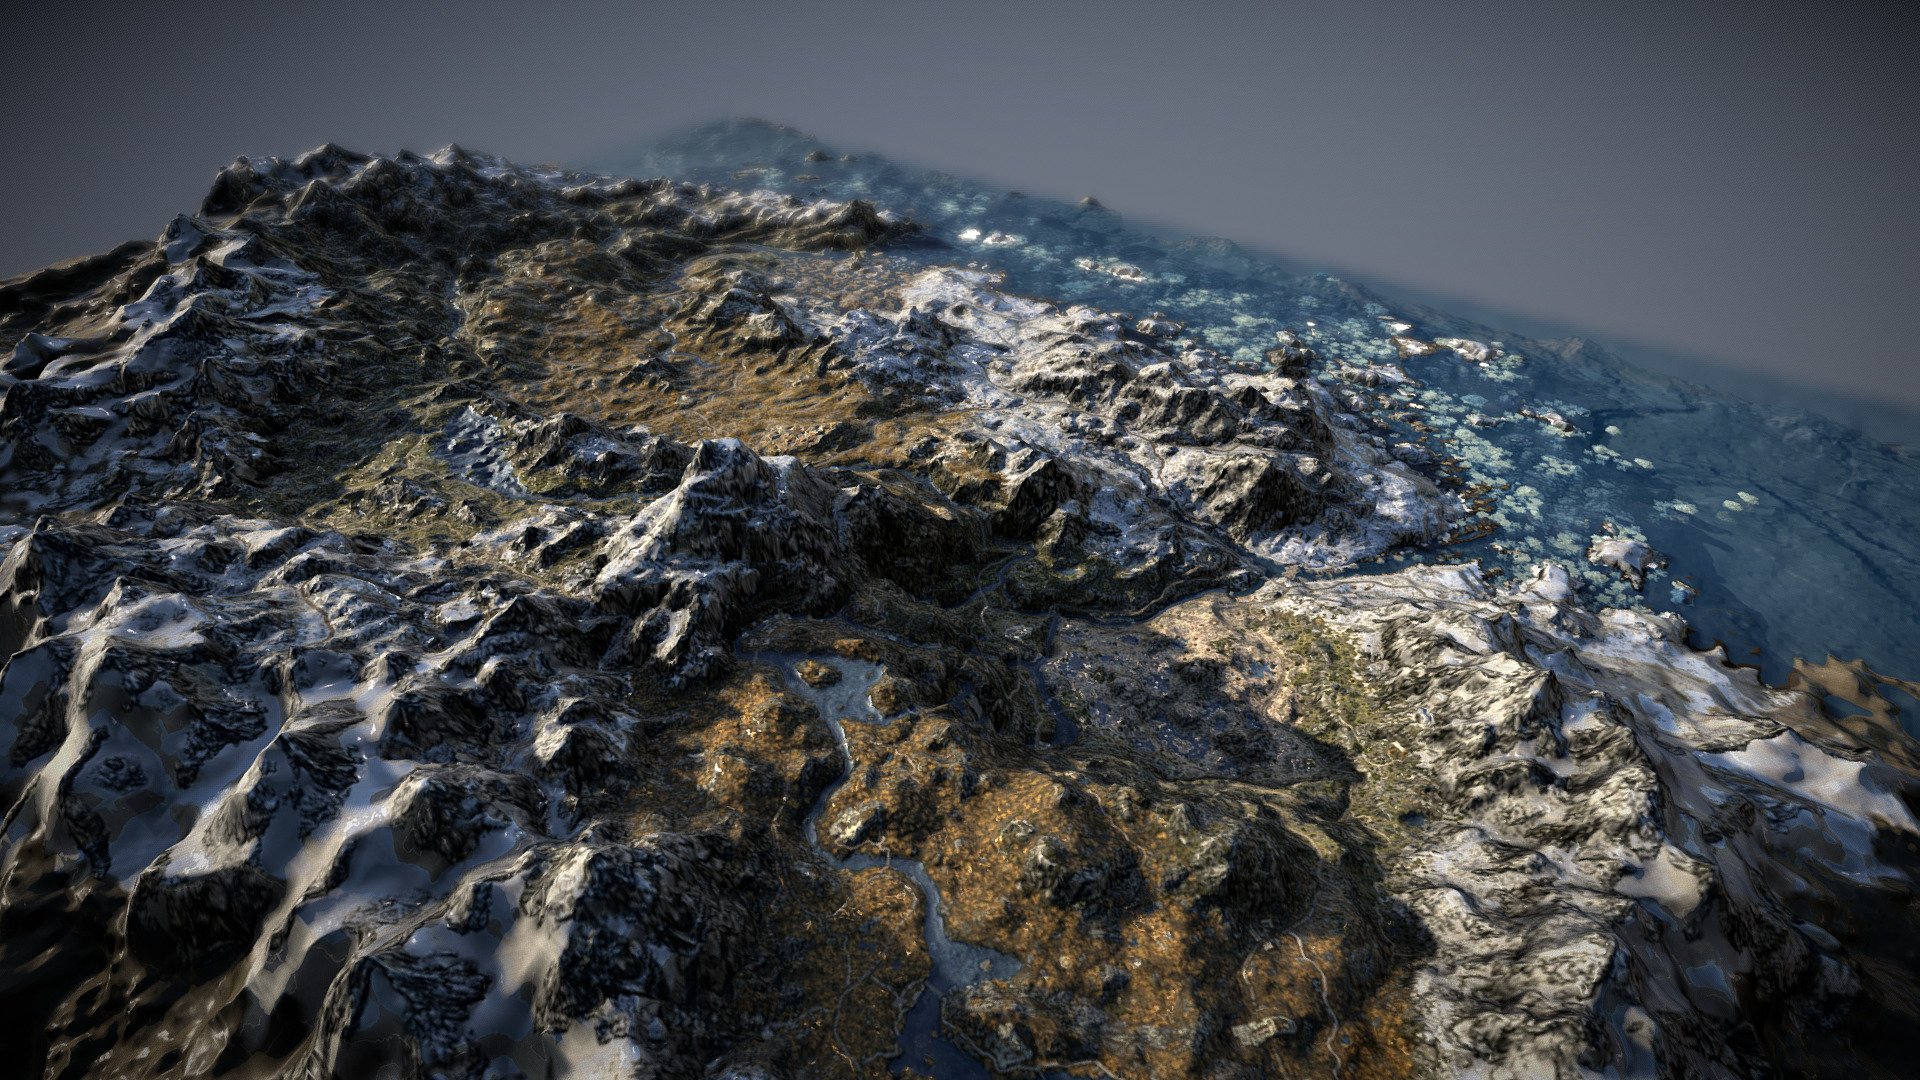 A 3d terrain map of Skyrim from the game The Elder Scrolls V: Skyrim - Skyrim 3D Map - 3D model by v7x 3d model